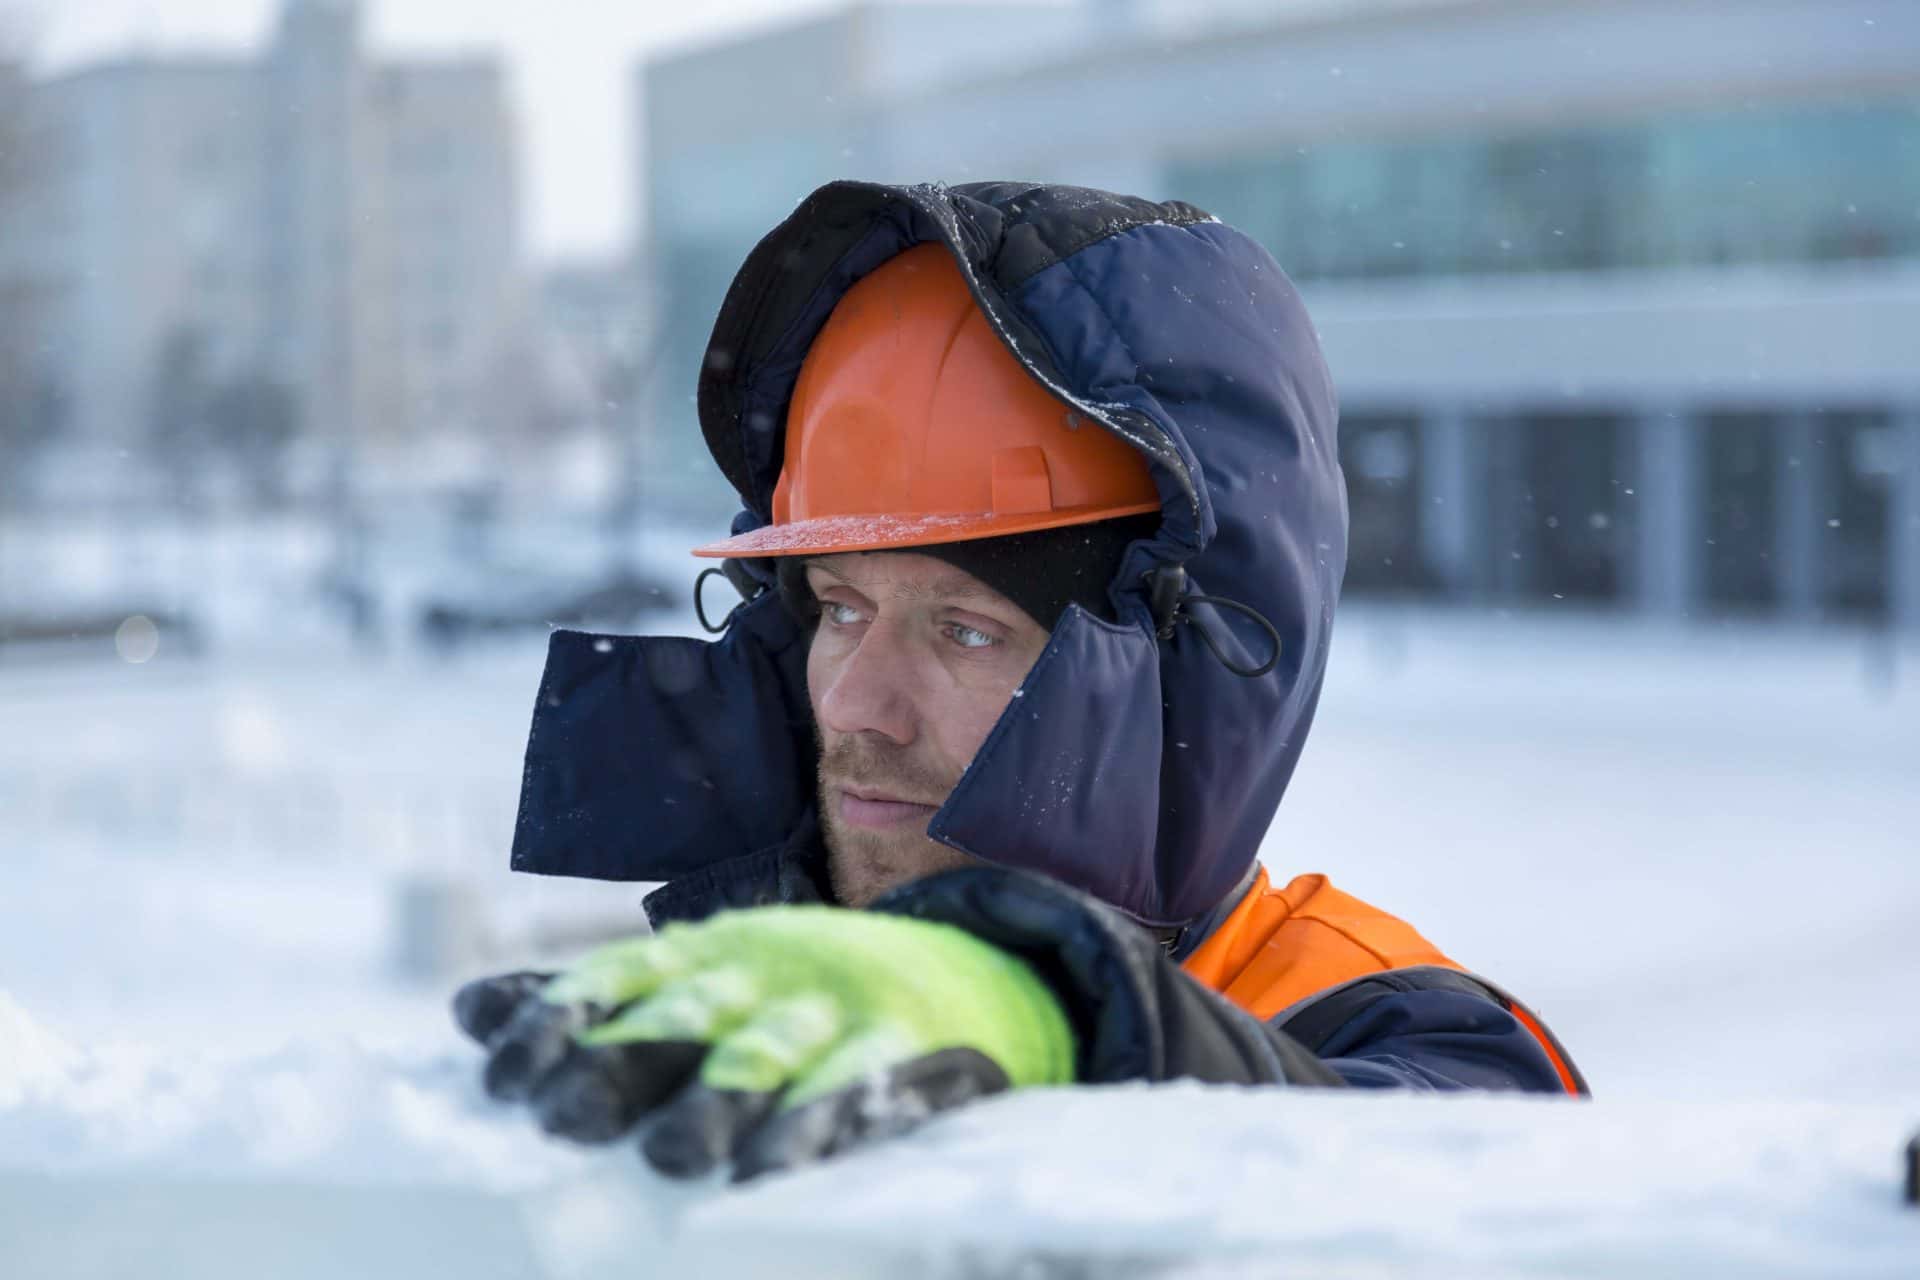 Védelem a hideg ellen a munkahelyünkön is: Hogyan lehet a legmegfelelőbb módon felszerelni a vállalatot és a munkatársakat